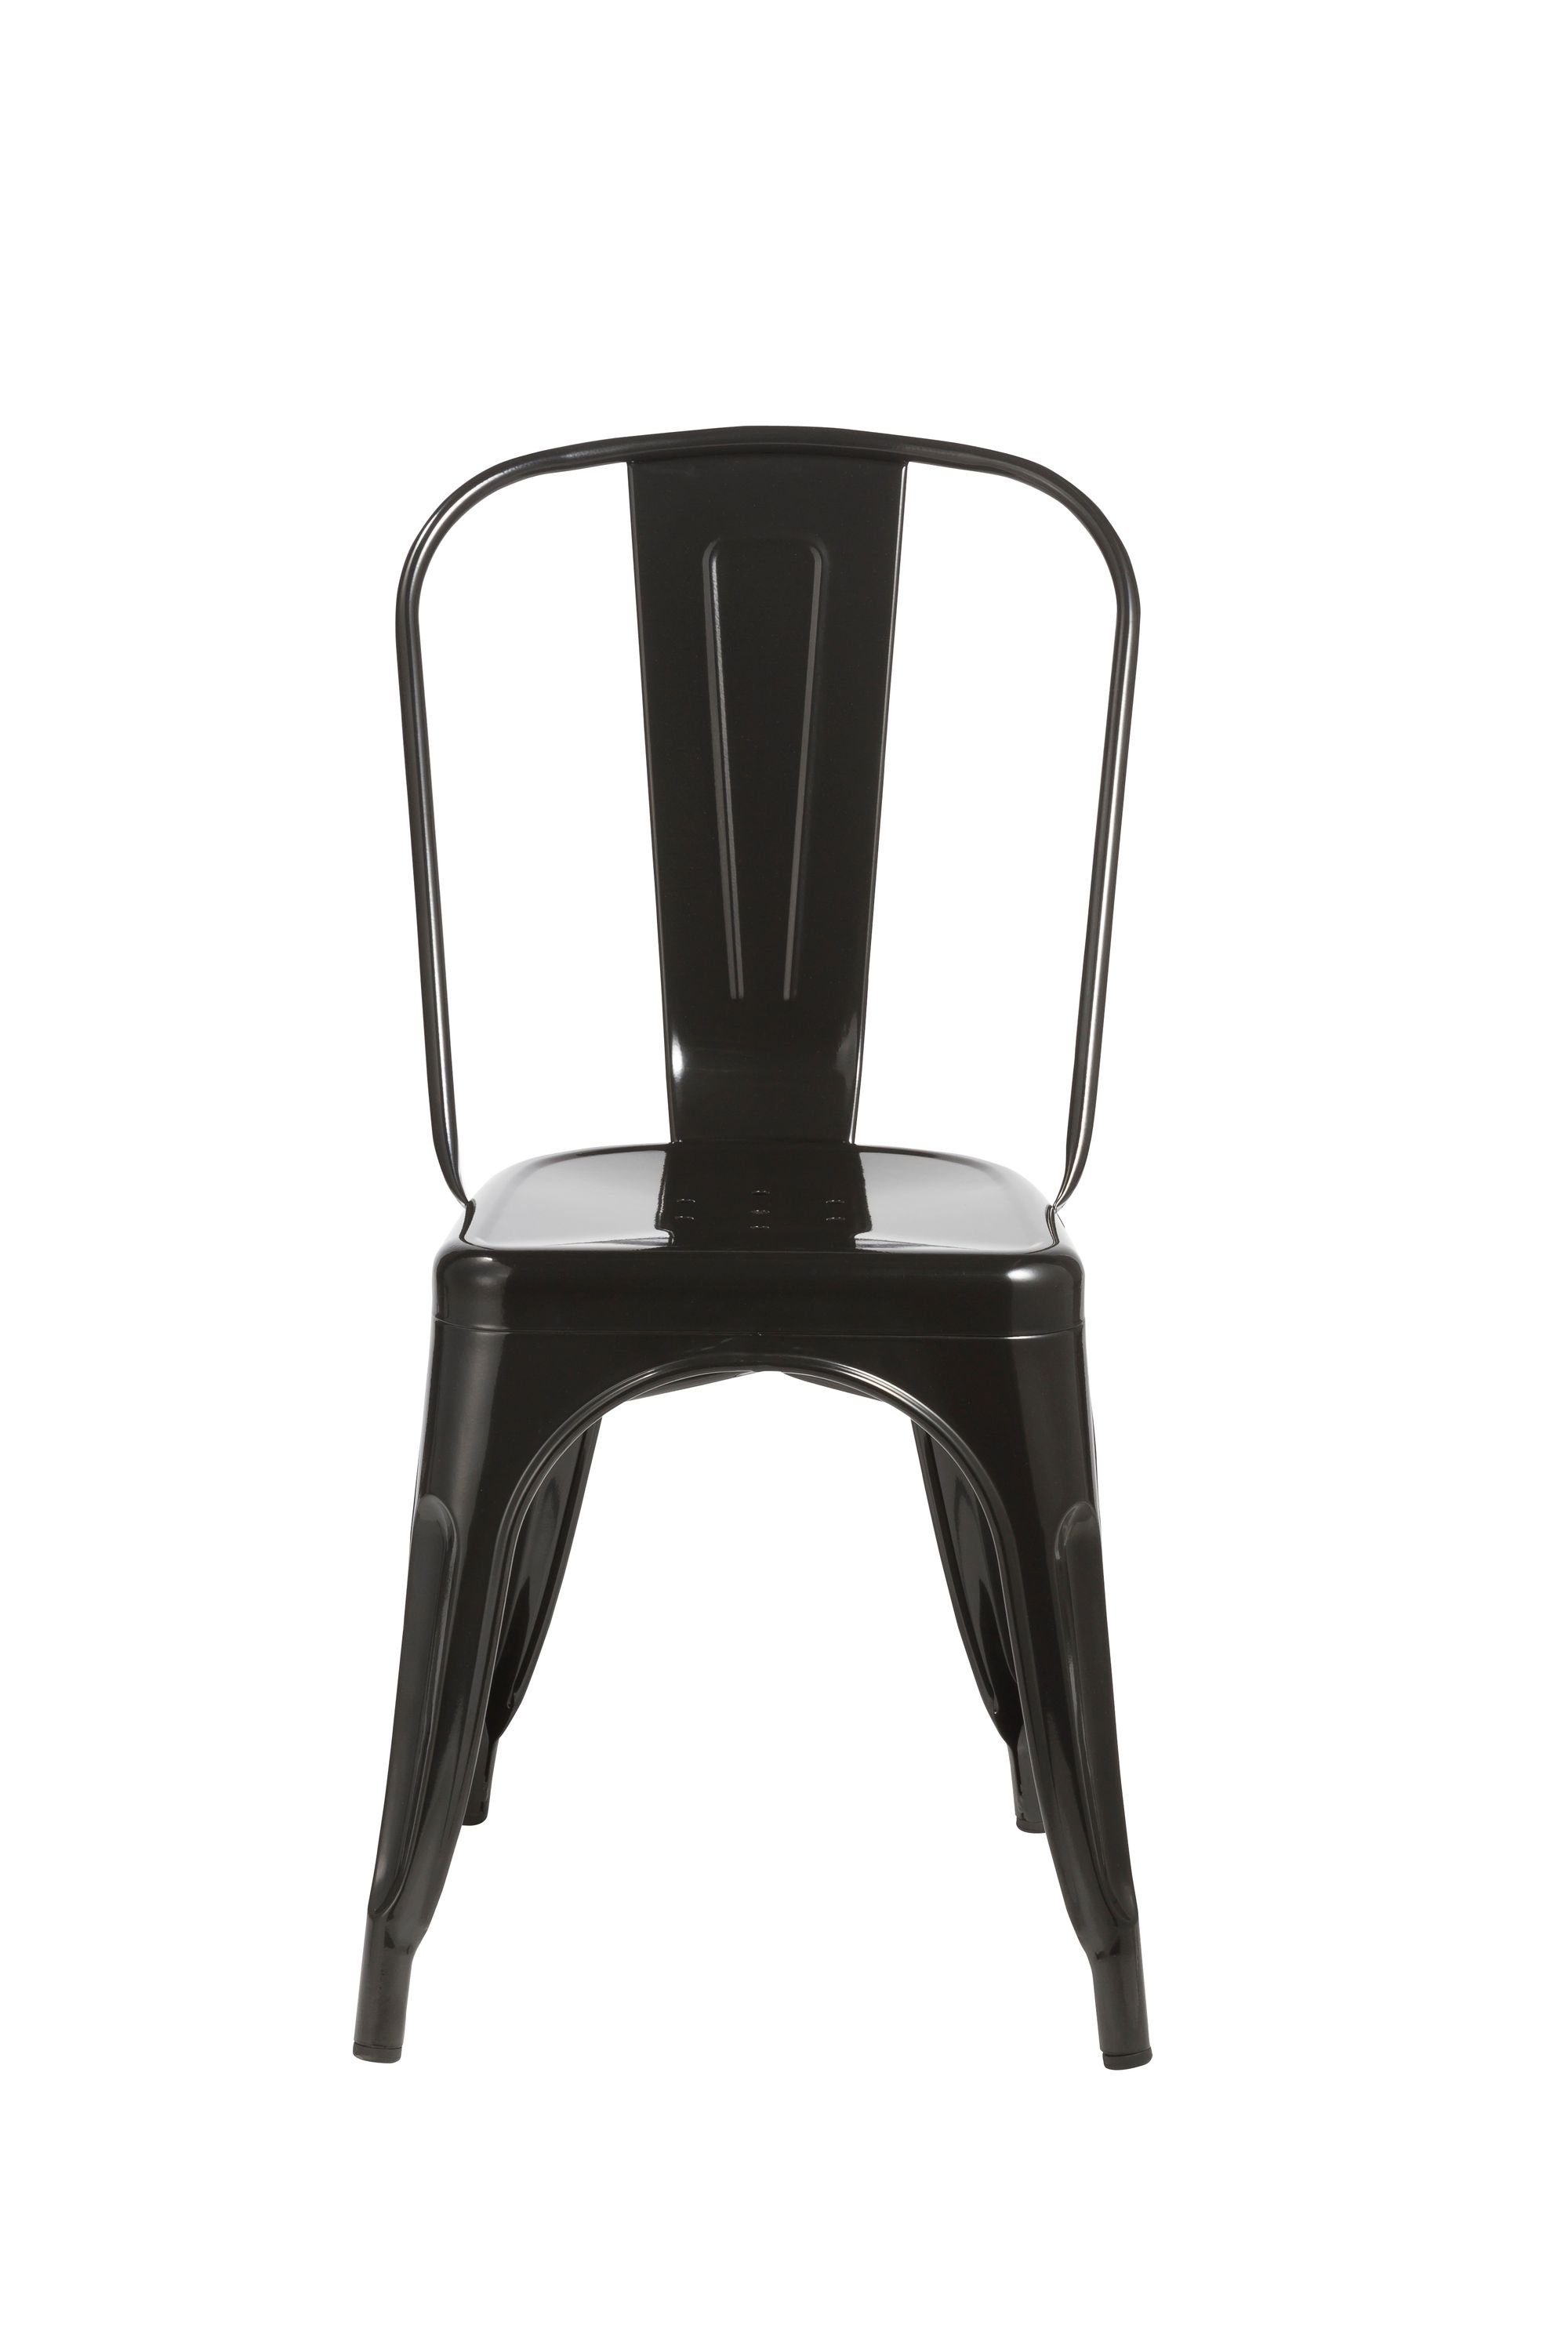 Duhome Esszimmerstuhl, Küchenstuhl Stuhl Esszimmerstuhl Schwarz METALL Sitzfläche aus aus Holz stapelbar